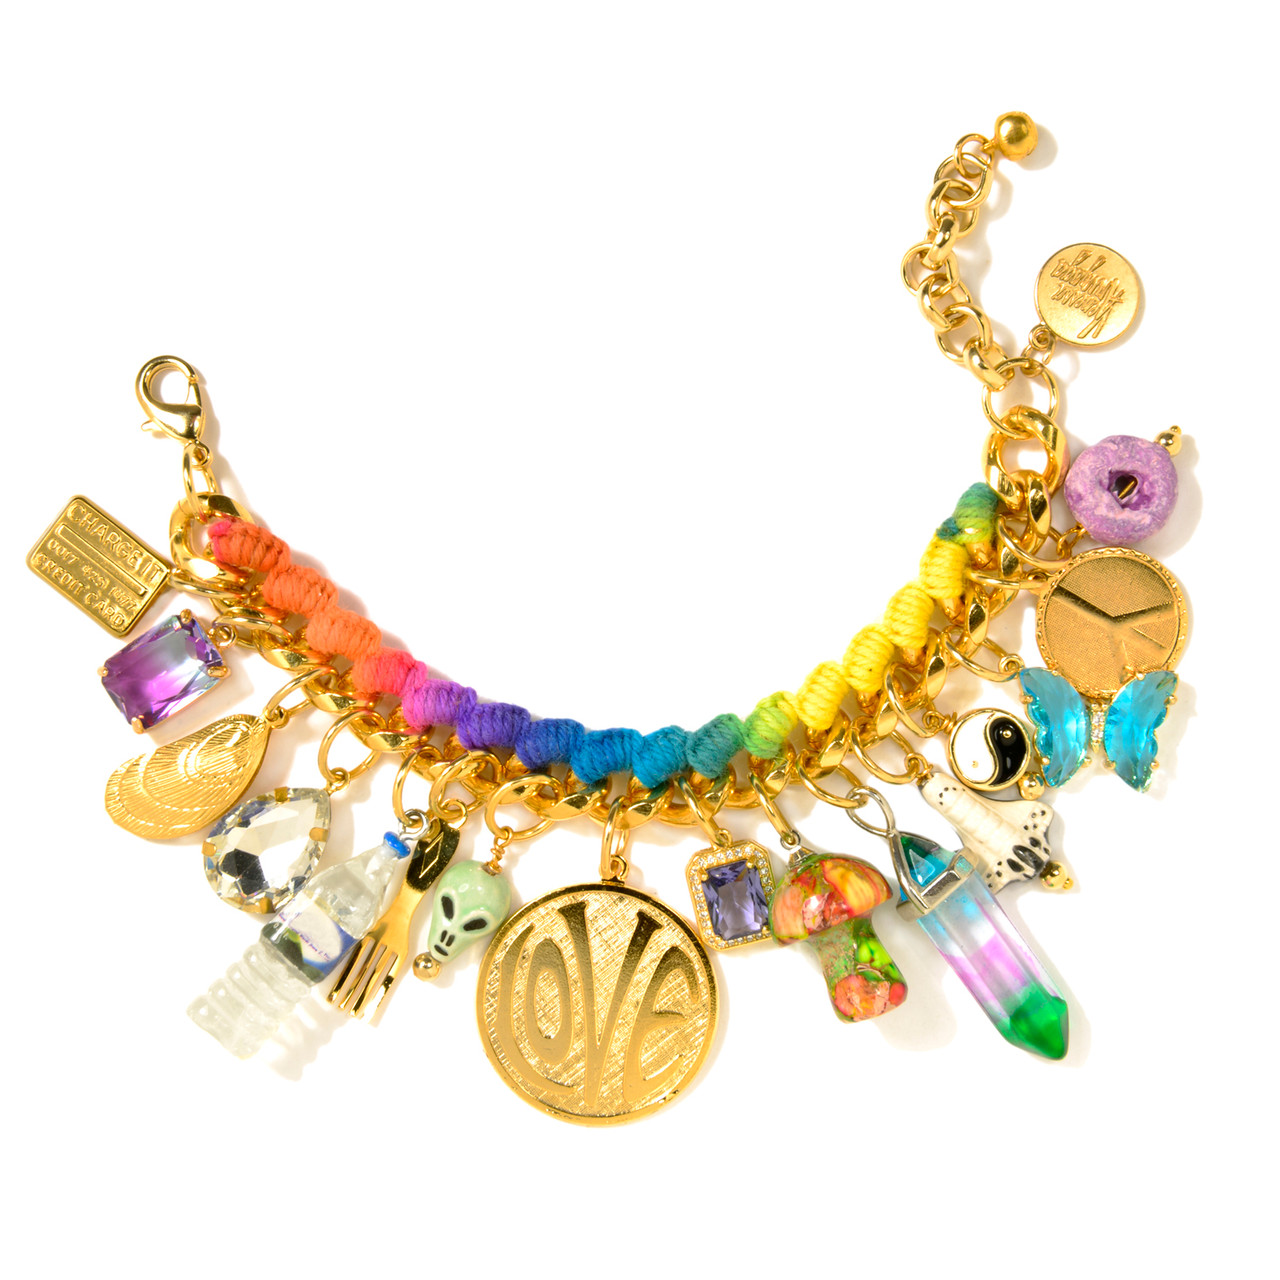 Groovy Love Rainbow Ceramic Charm Bracelet, Venessa Arizaga, tomfoolery